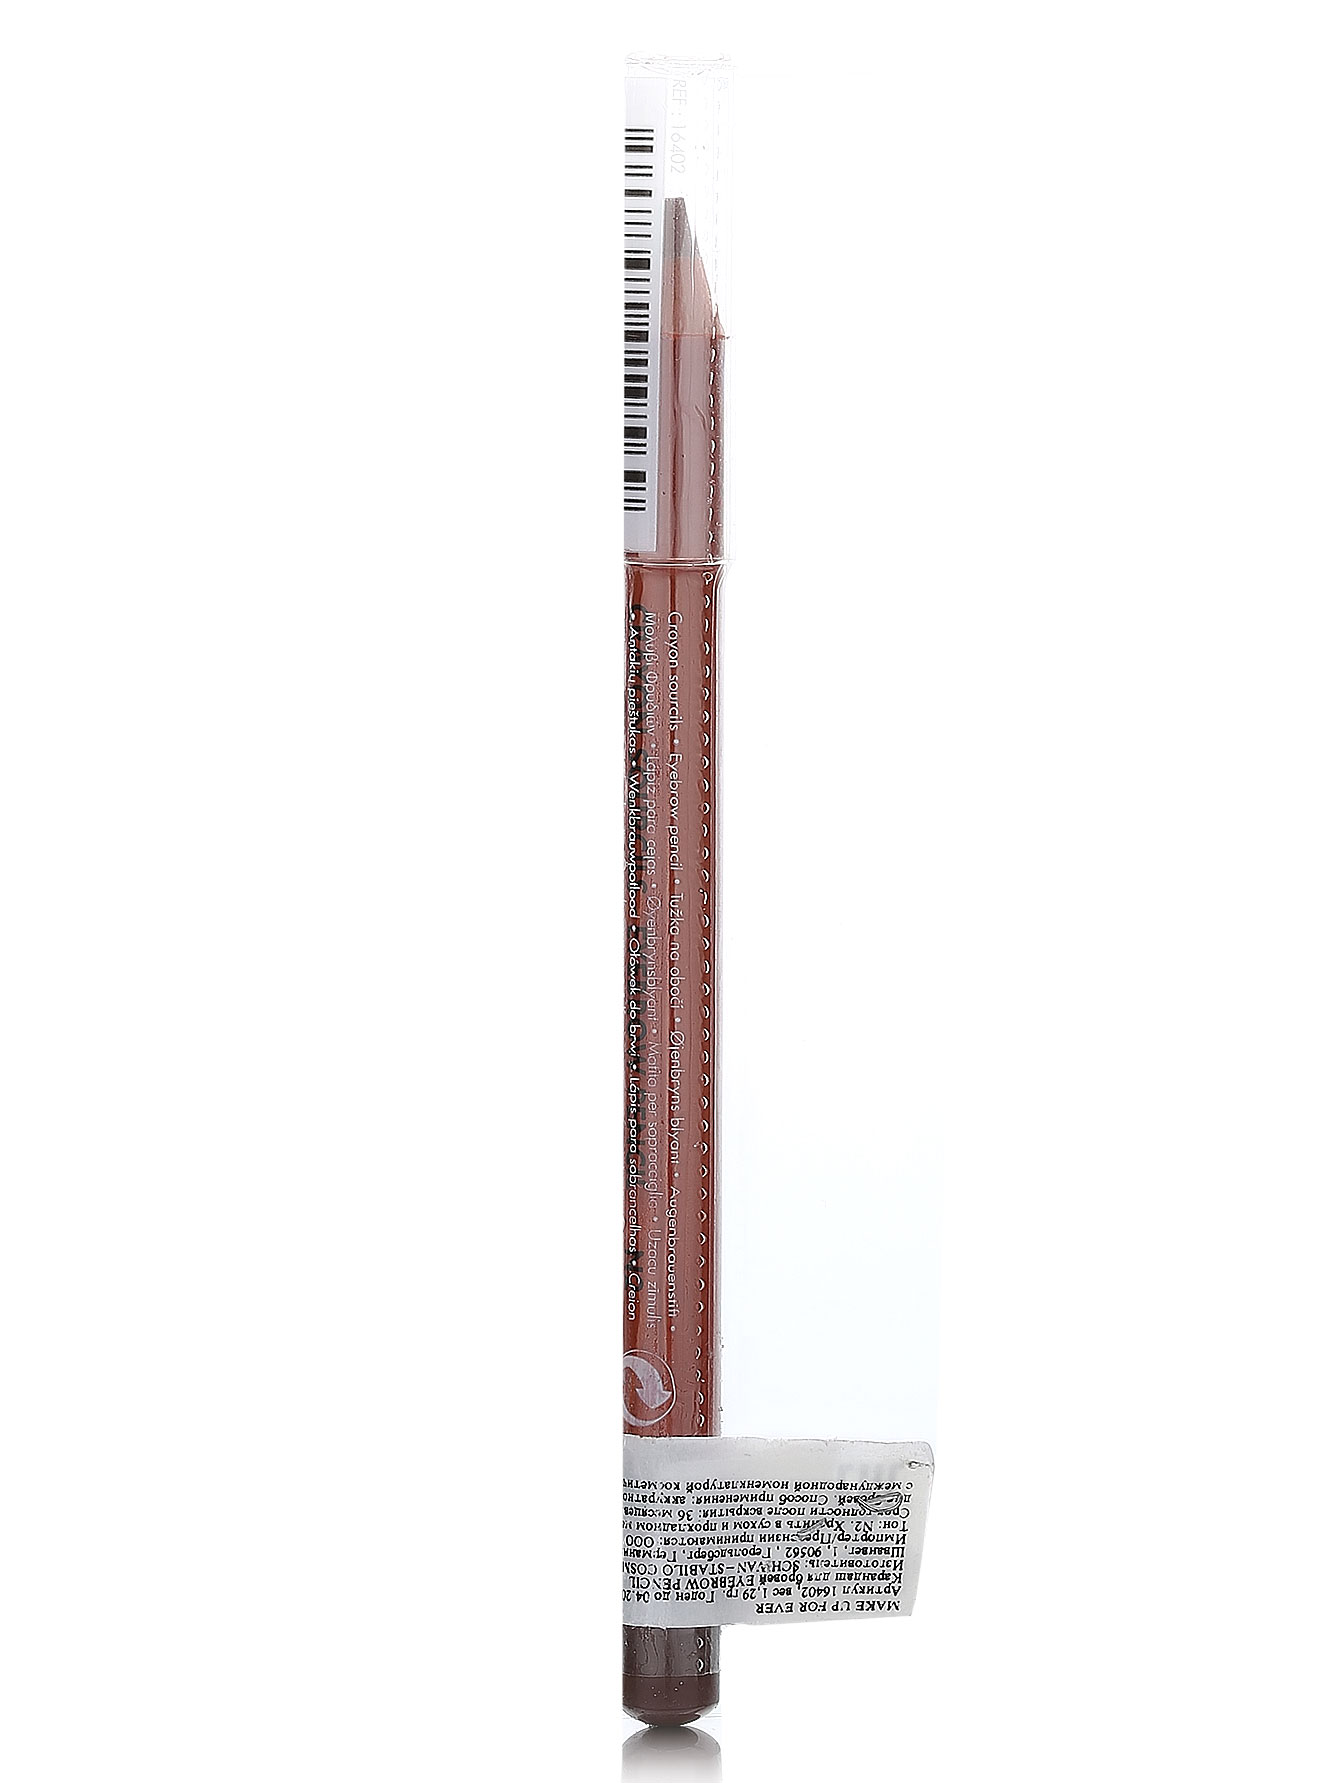 Карандаш для бровей - №2 серо-коричневый, Eyebrow Pencil - Модель Верх-Низ